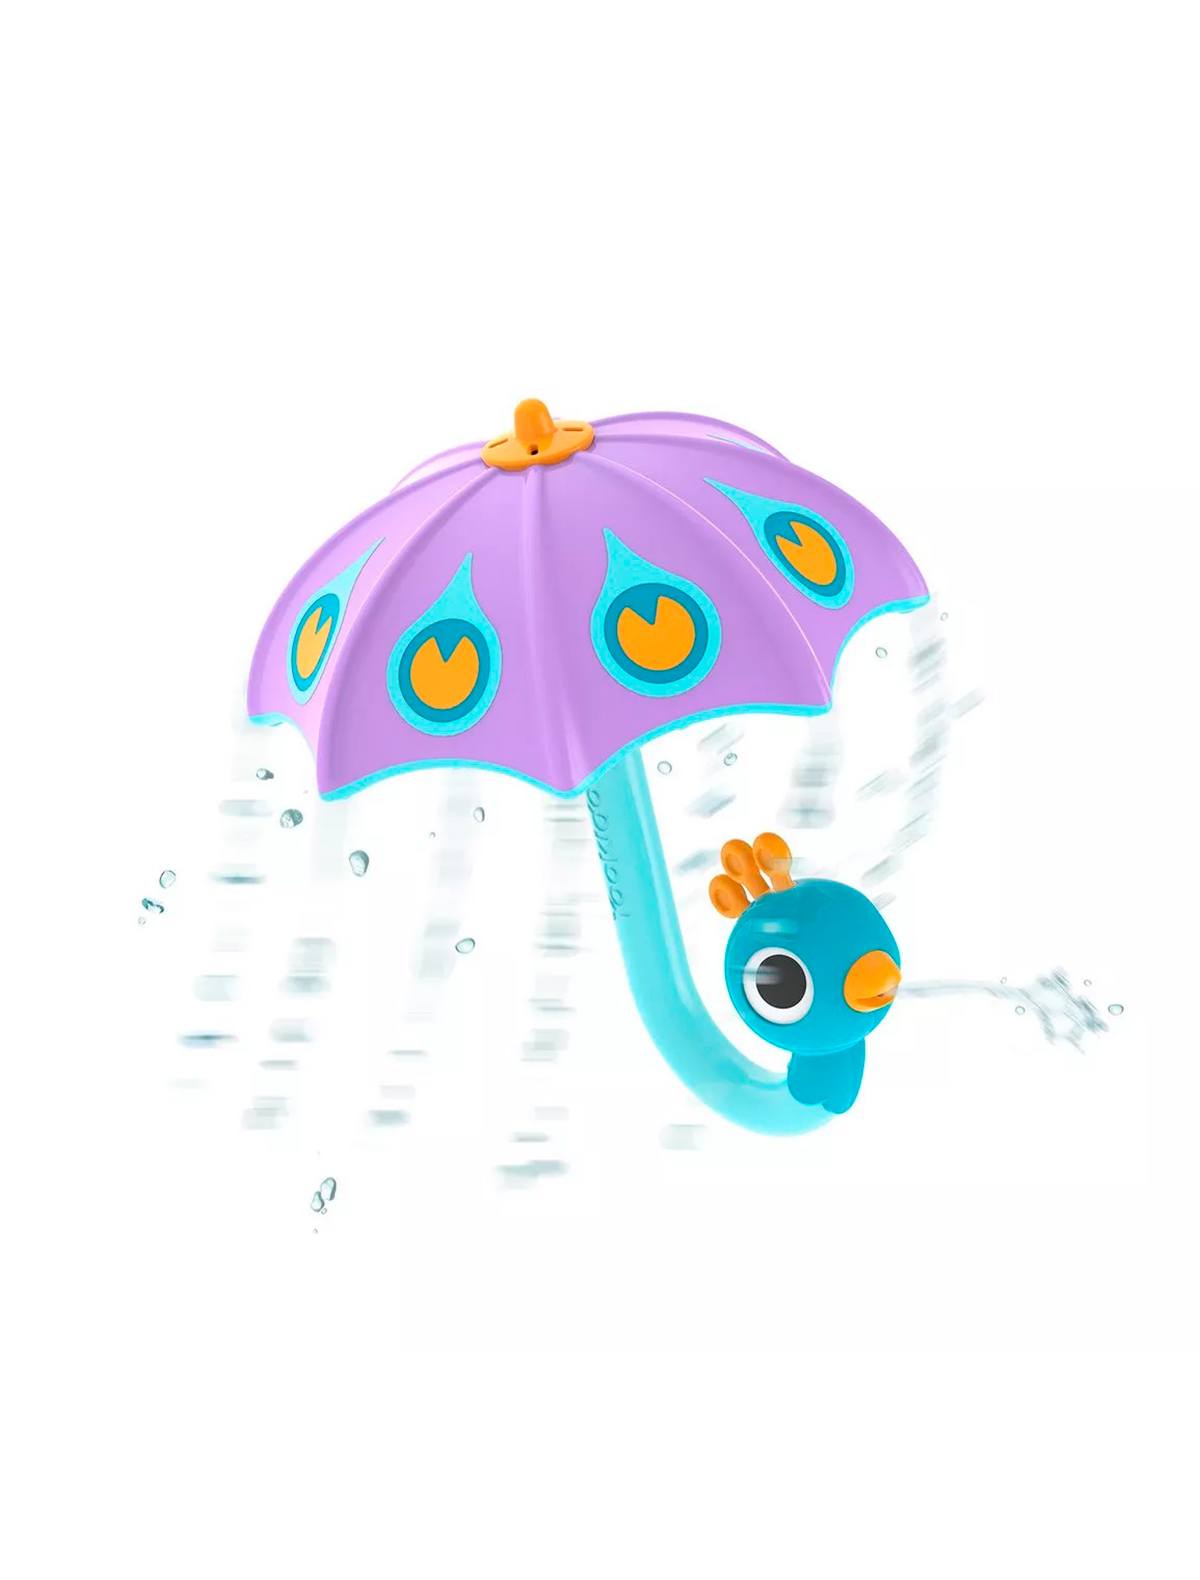 Игрушка YooKidoo игрушка водная yookidoo веселый слон голубой